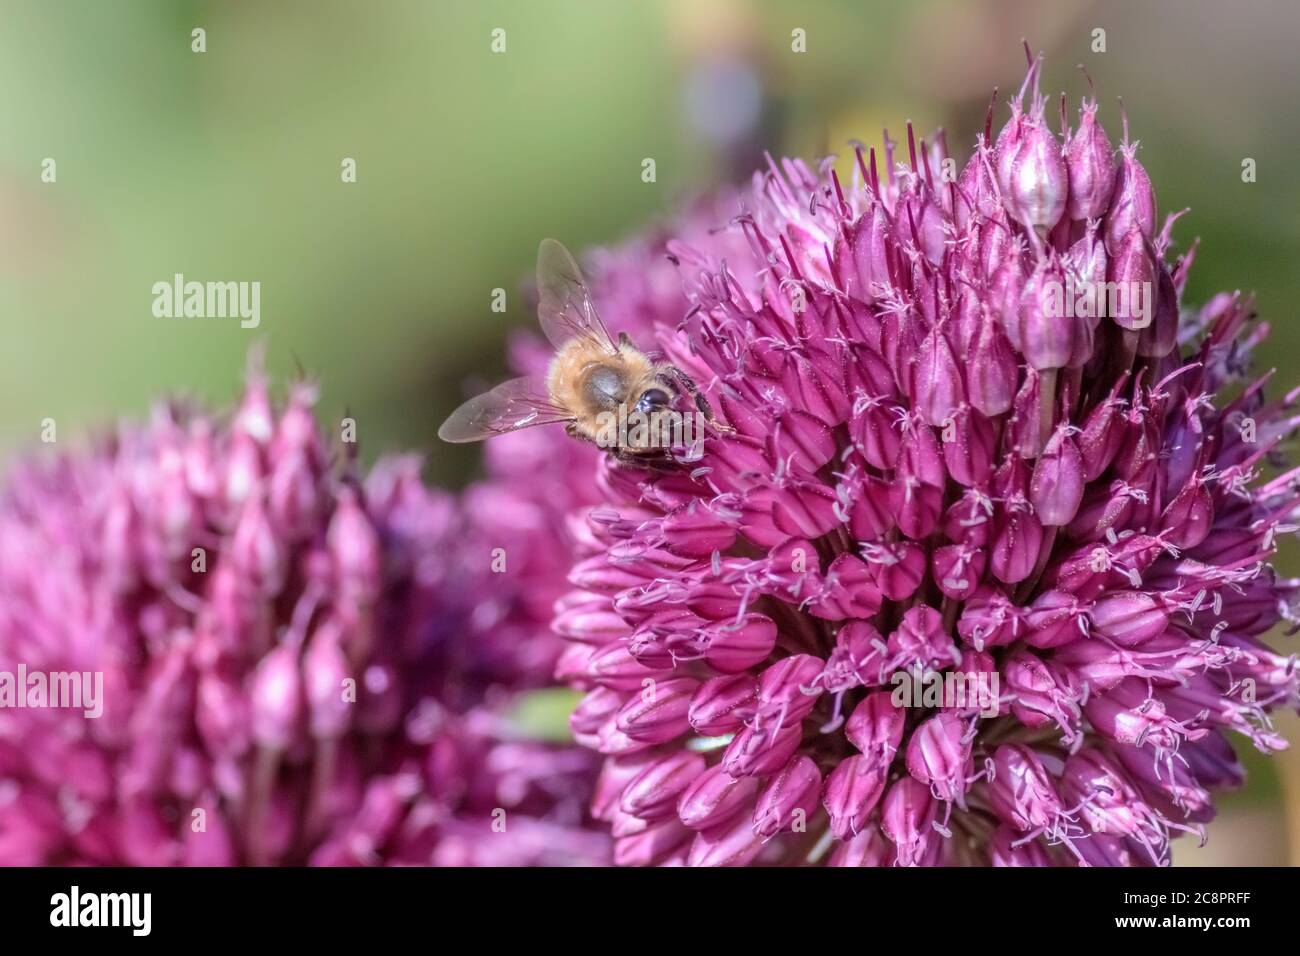 Vista a nivel de ojos, desde el frente, de una abeja de miel que recoge néctar de una cabeza de flor púrpura Allium sphaerocephaluon, con un fondo verde borroso. Foto de stock